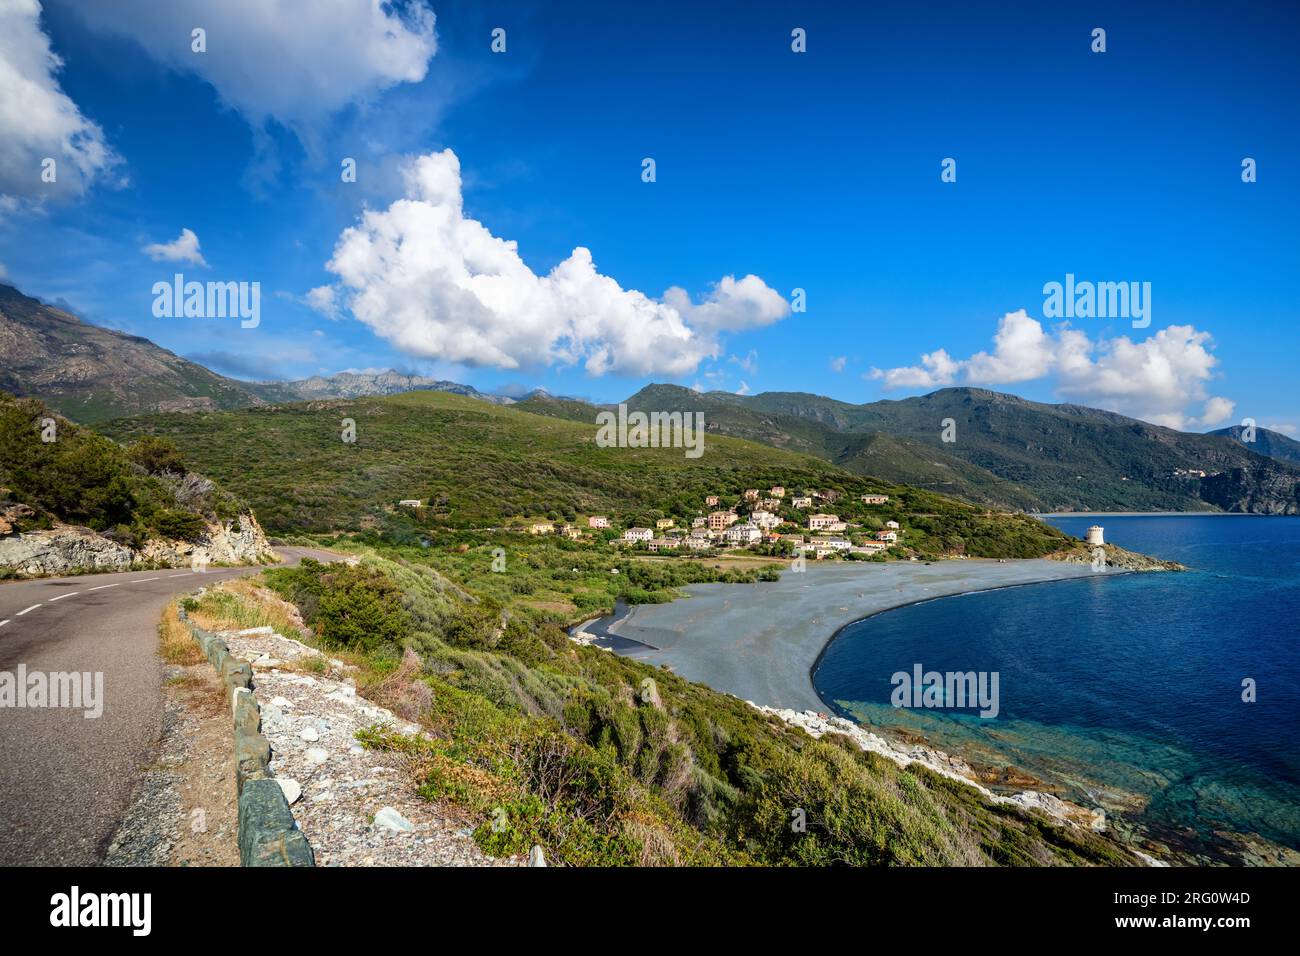 Albo villaggio e spiaggia, Corsica, Francia Foto Stock